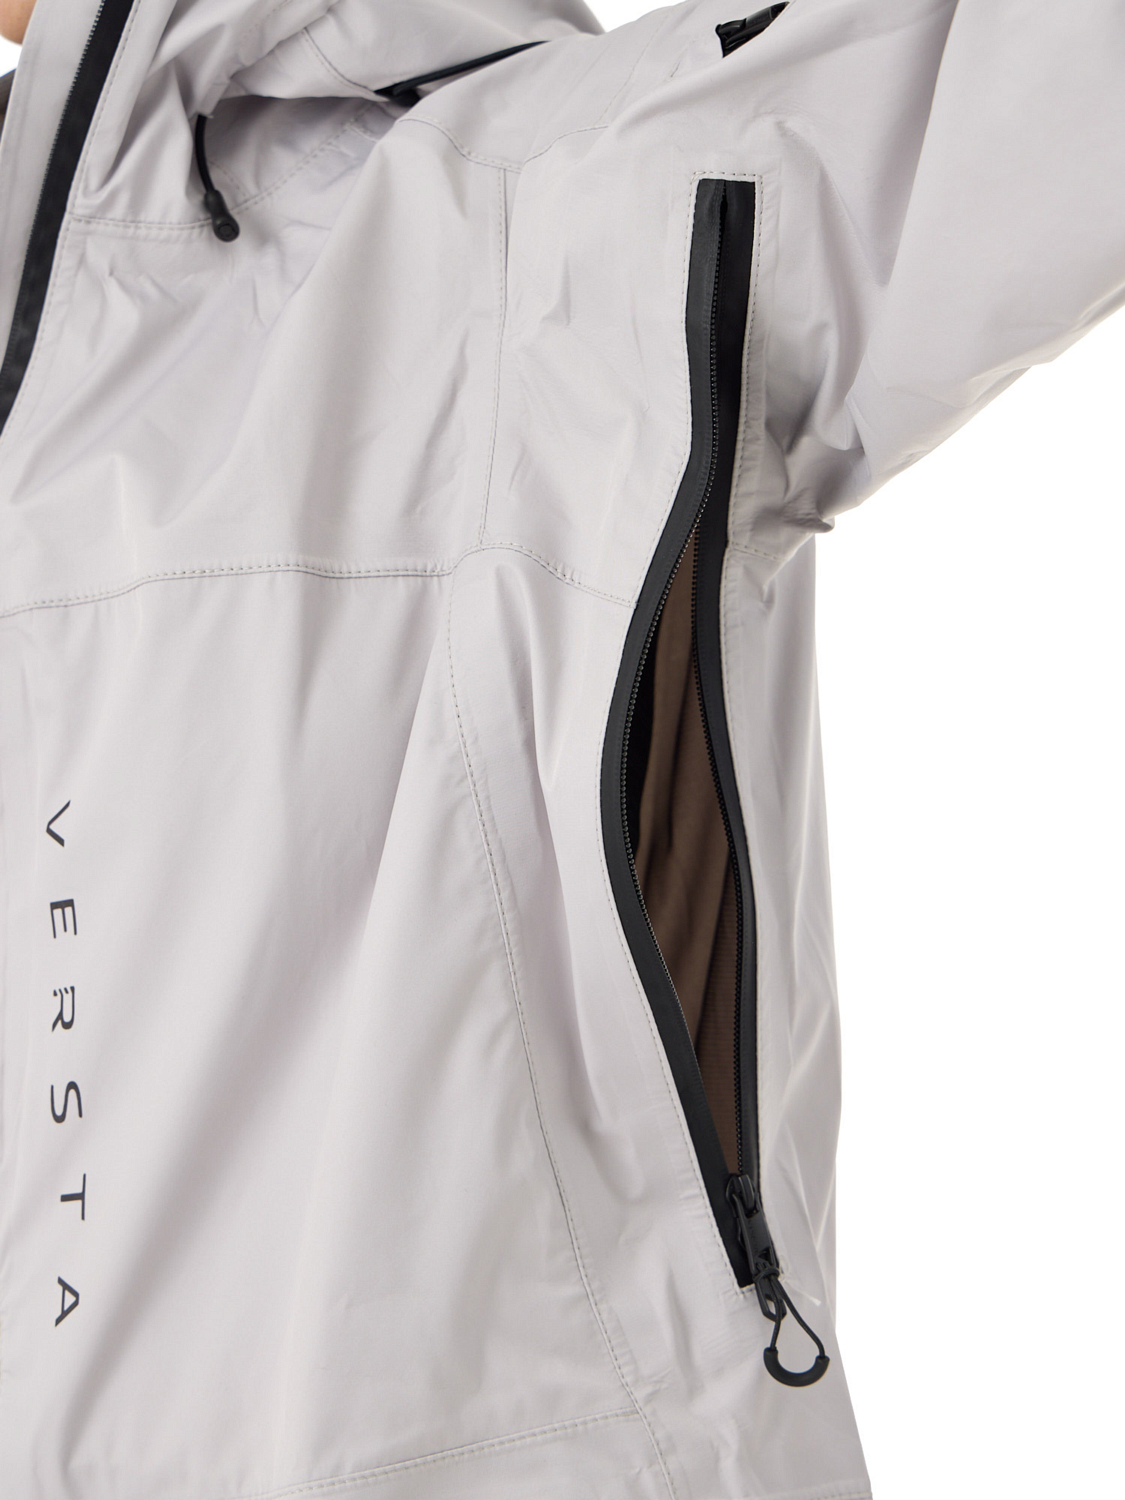 Куртка сноубордическая Versta Rider Collection Woman Grey